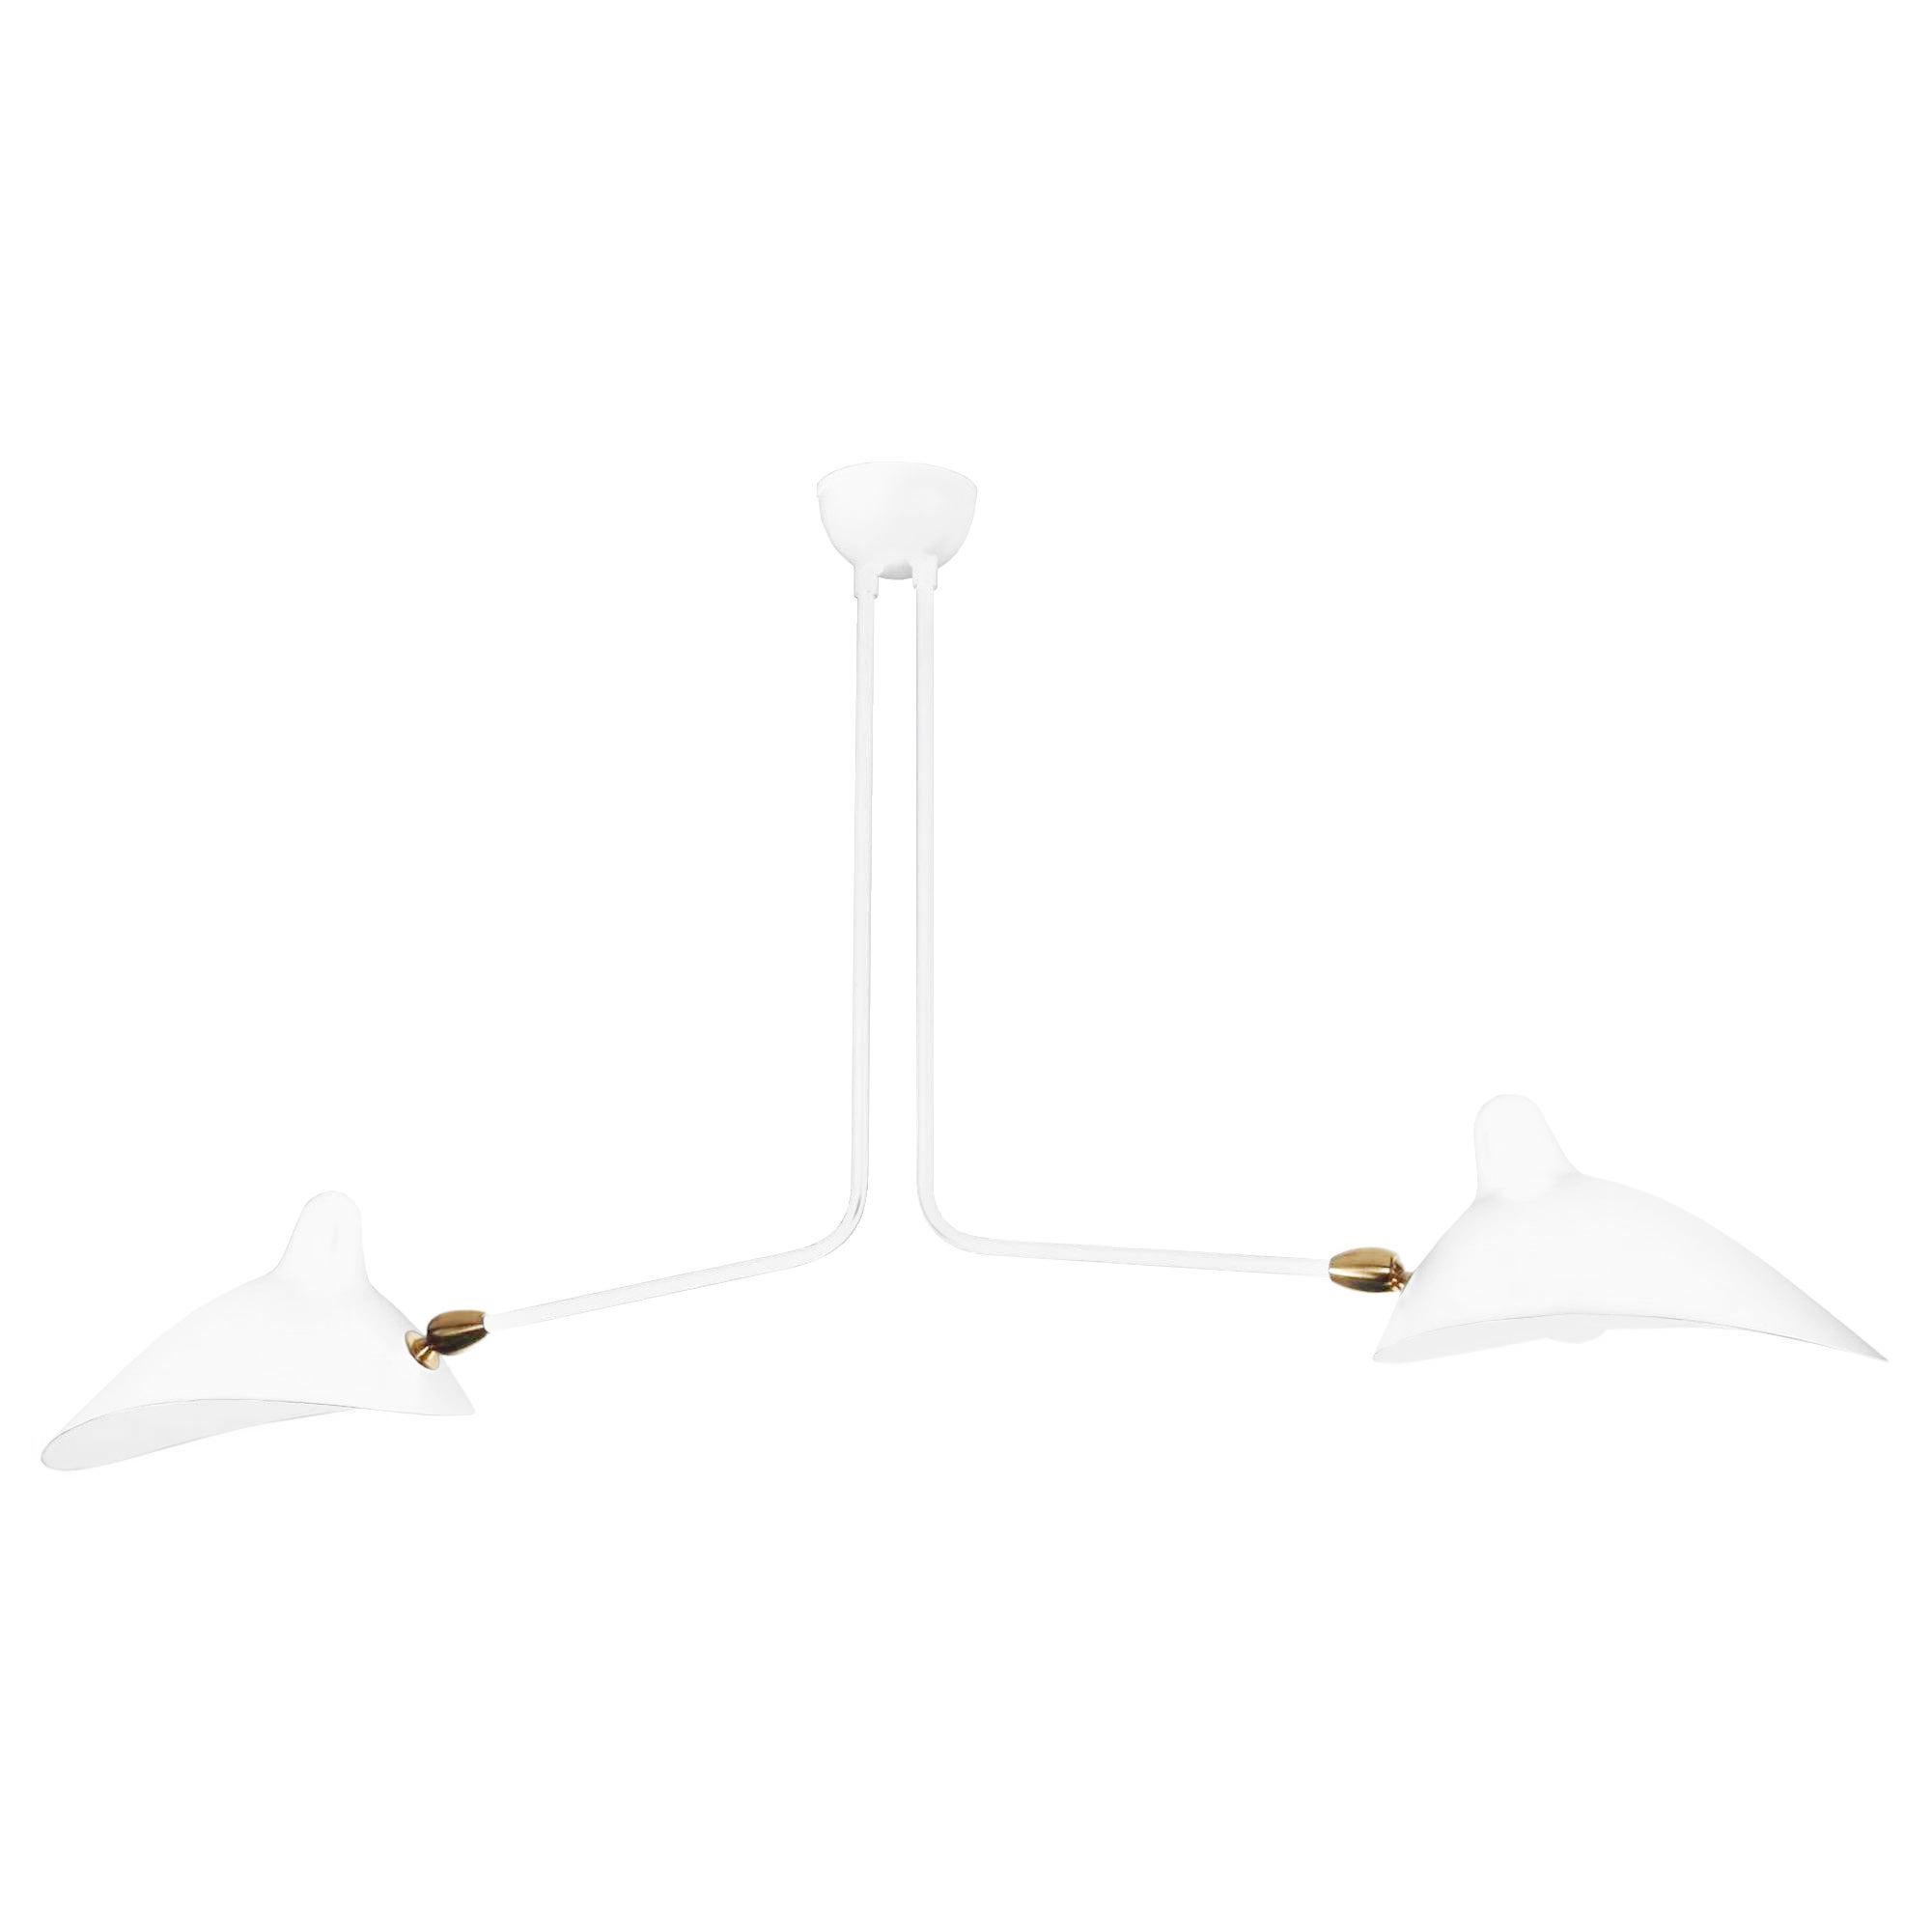 Deckenleuchte Modell 'Two fixed arms ceiling lamp', entworfen von Serge Mouille im Jahr 1959.

Hergestellt von Editions Serge Mouille in Frankreich. Die Herstellung der Lampen, Wandleuchten und Stehlampen erfolgt in handwerklicher Weise mit den